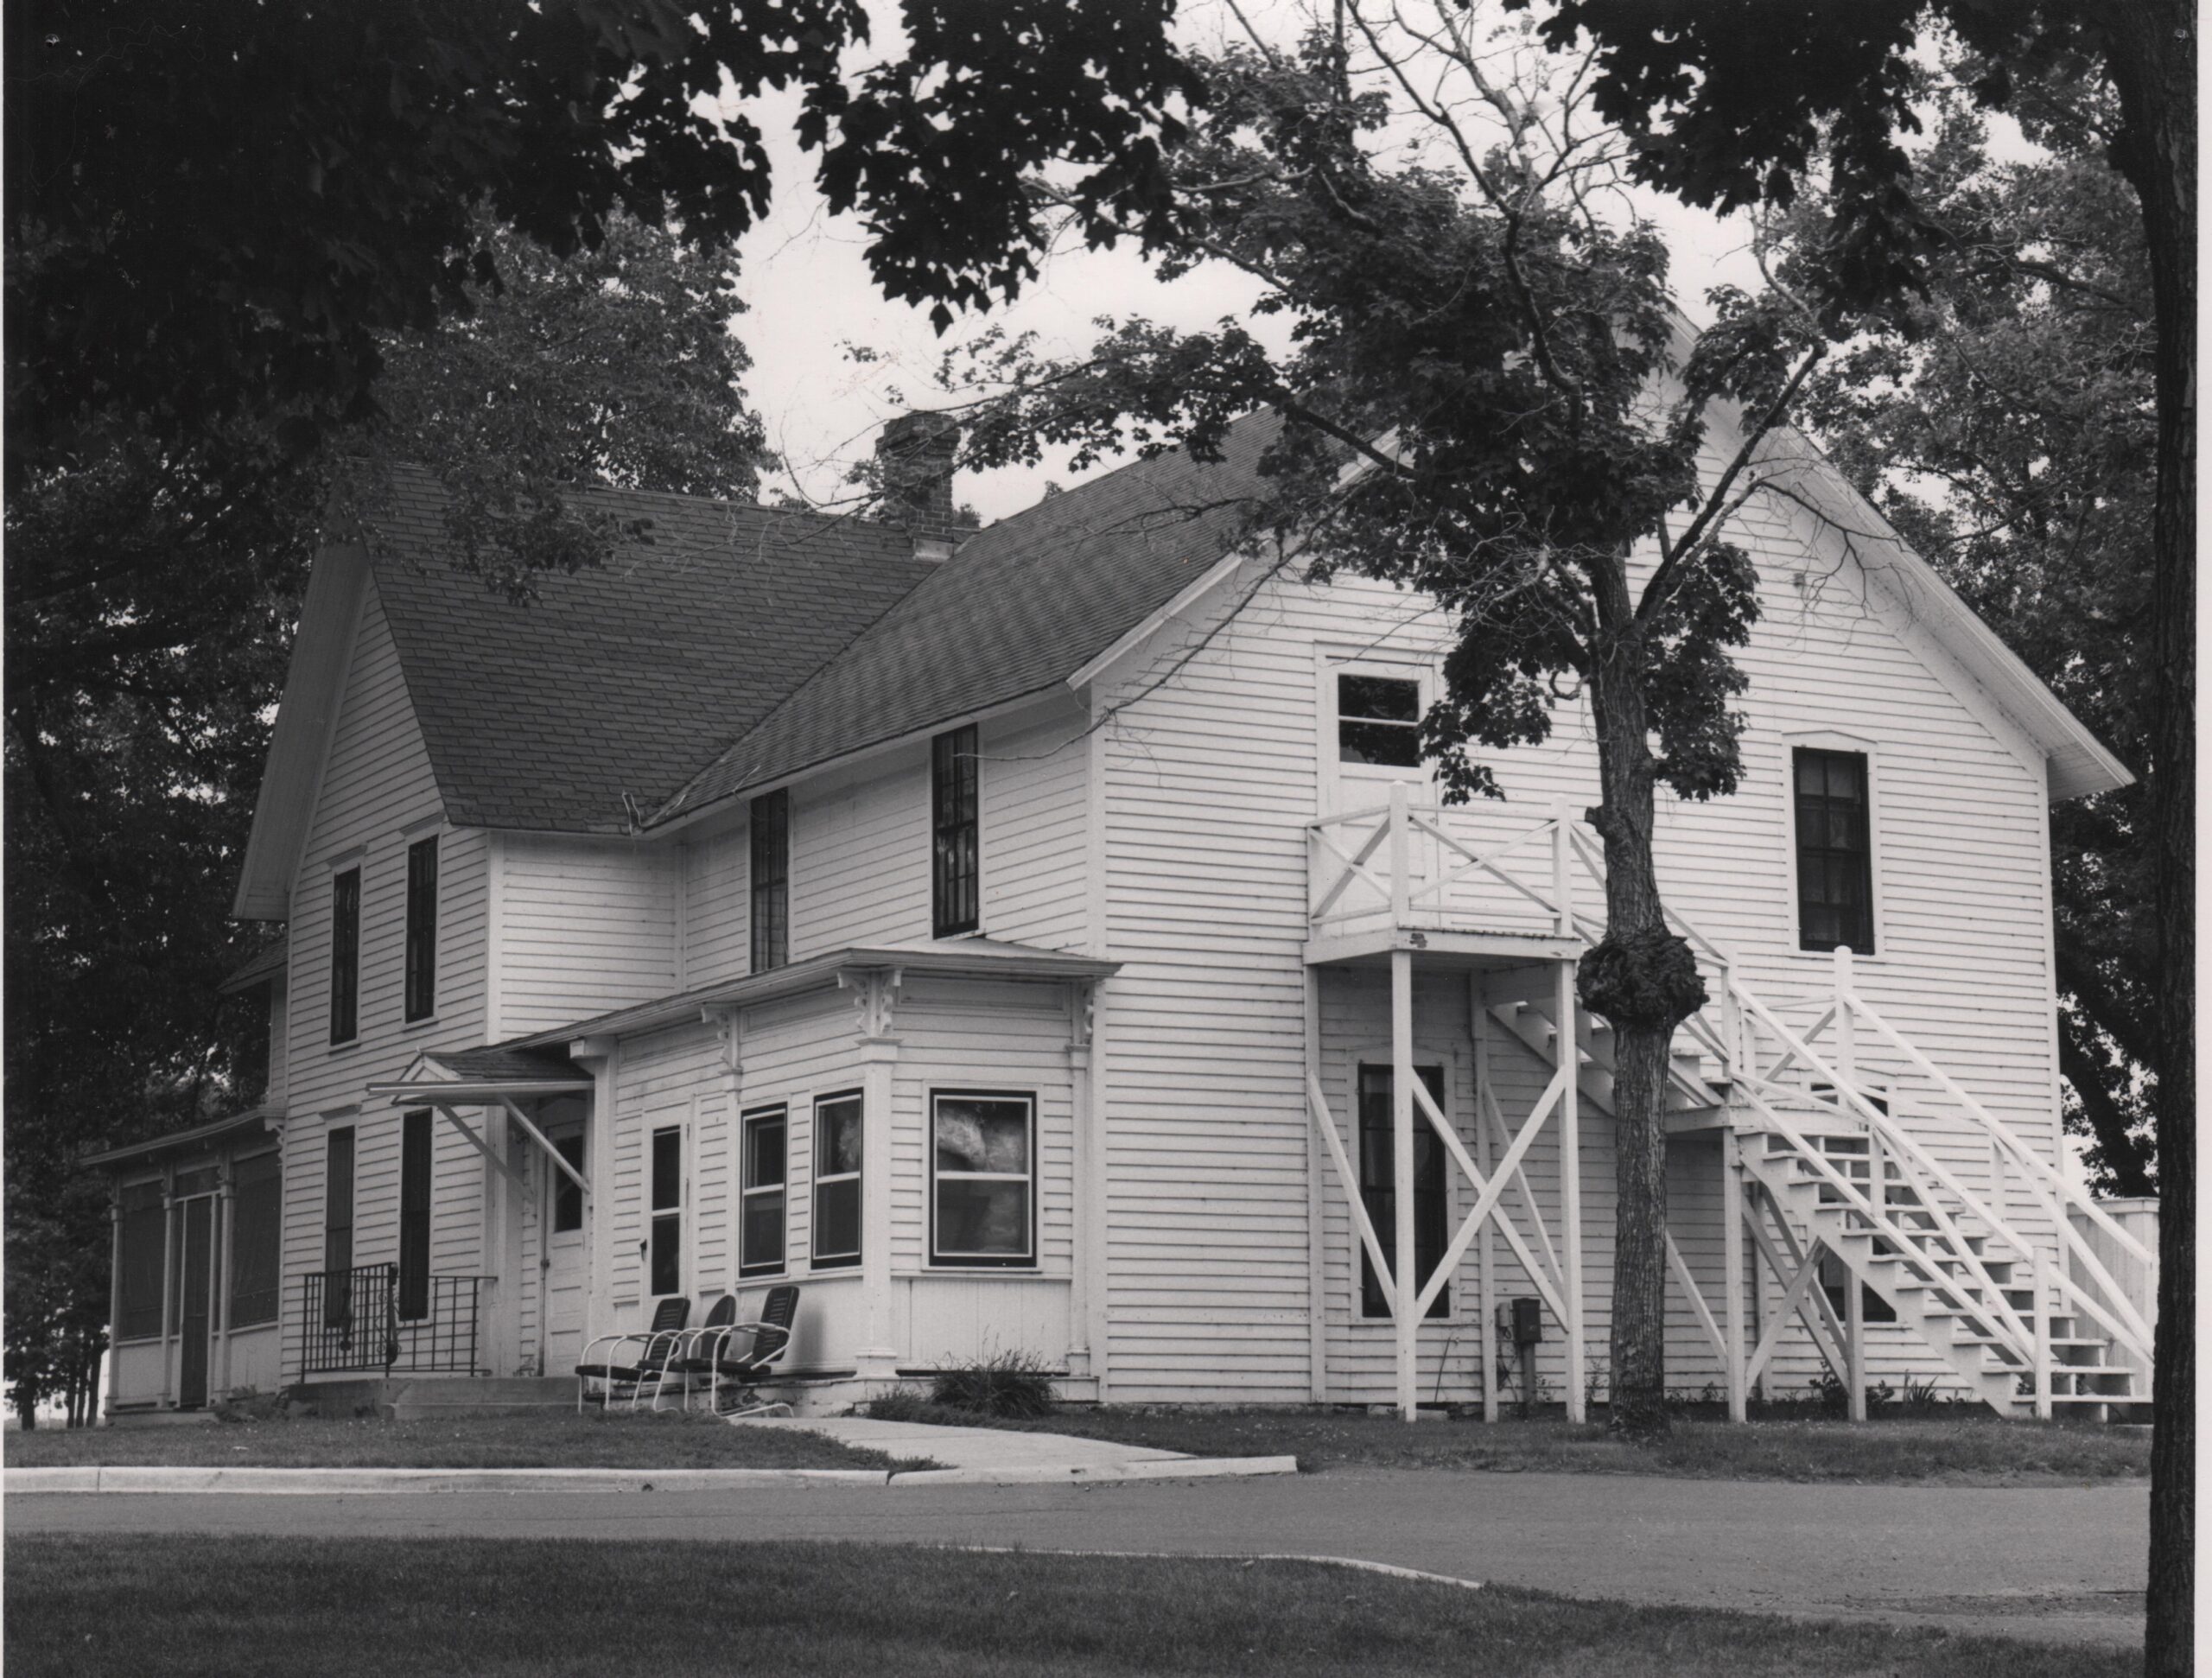 Original Knute Nelson House